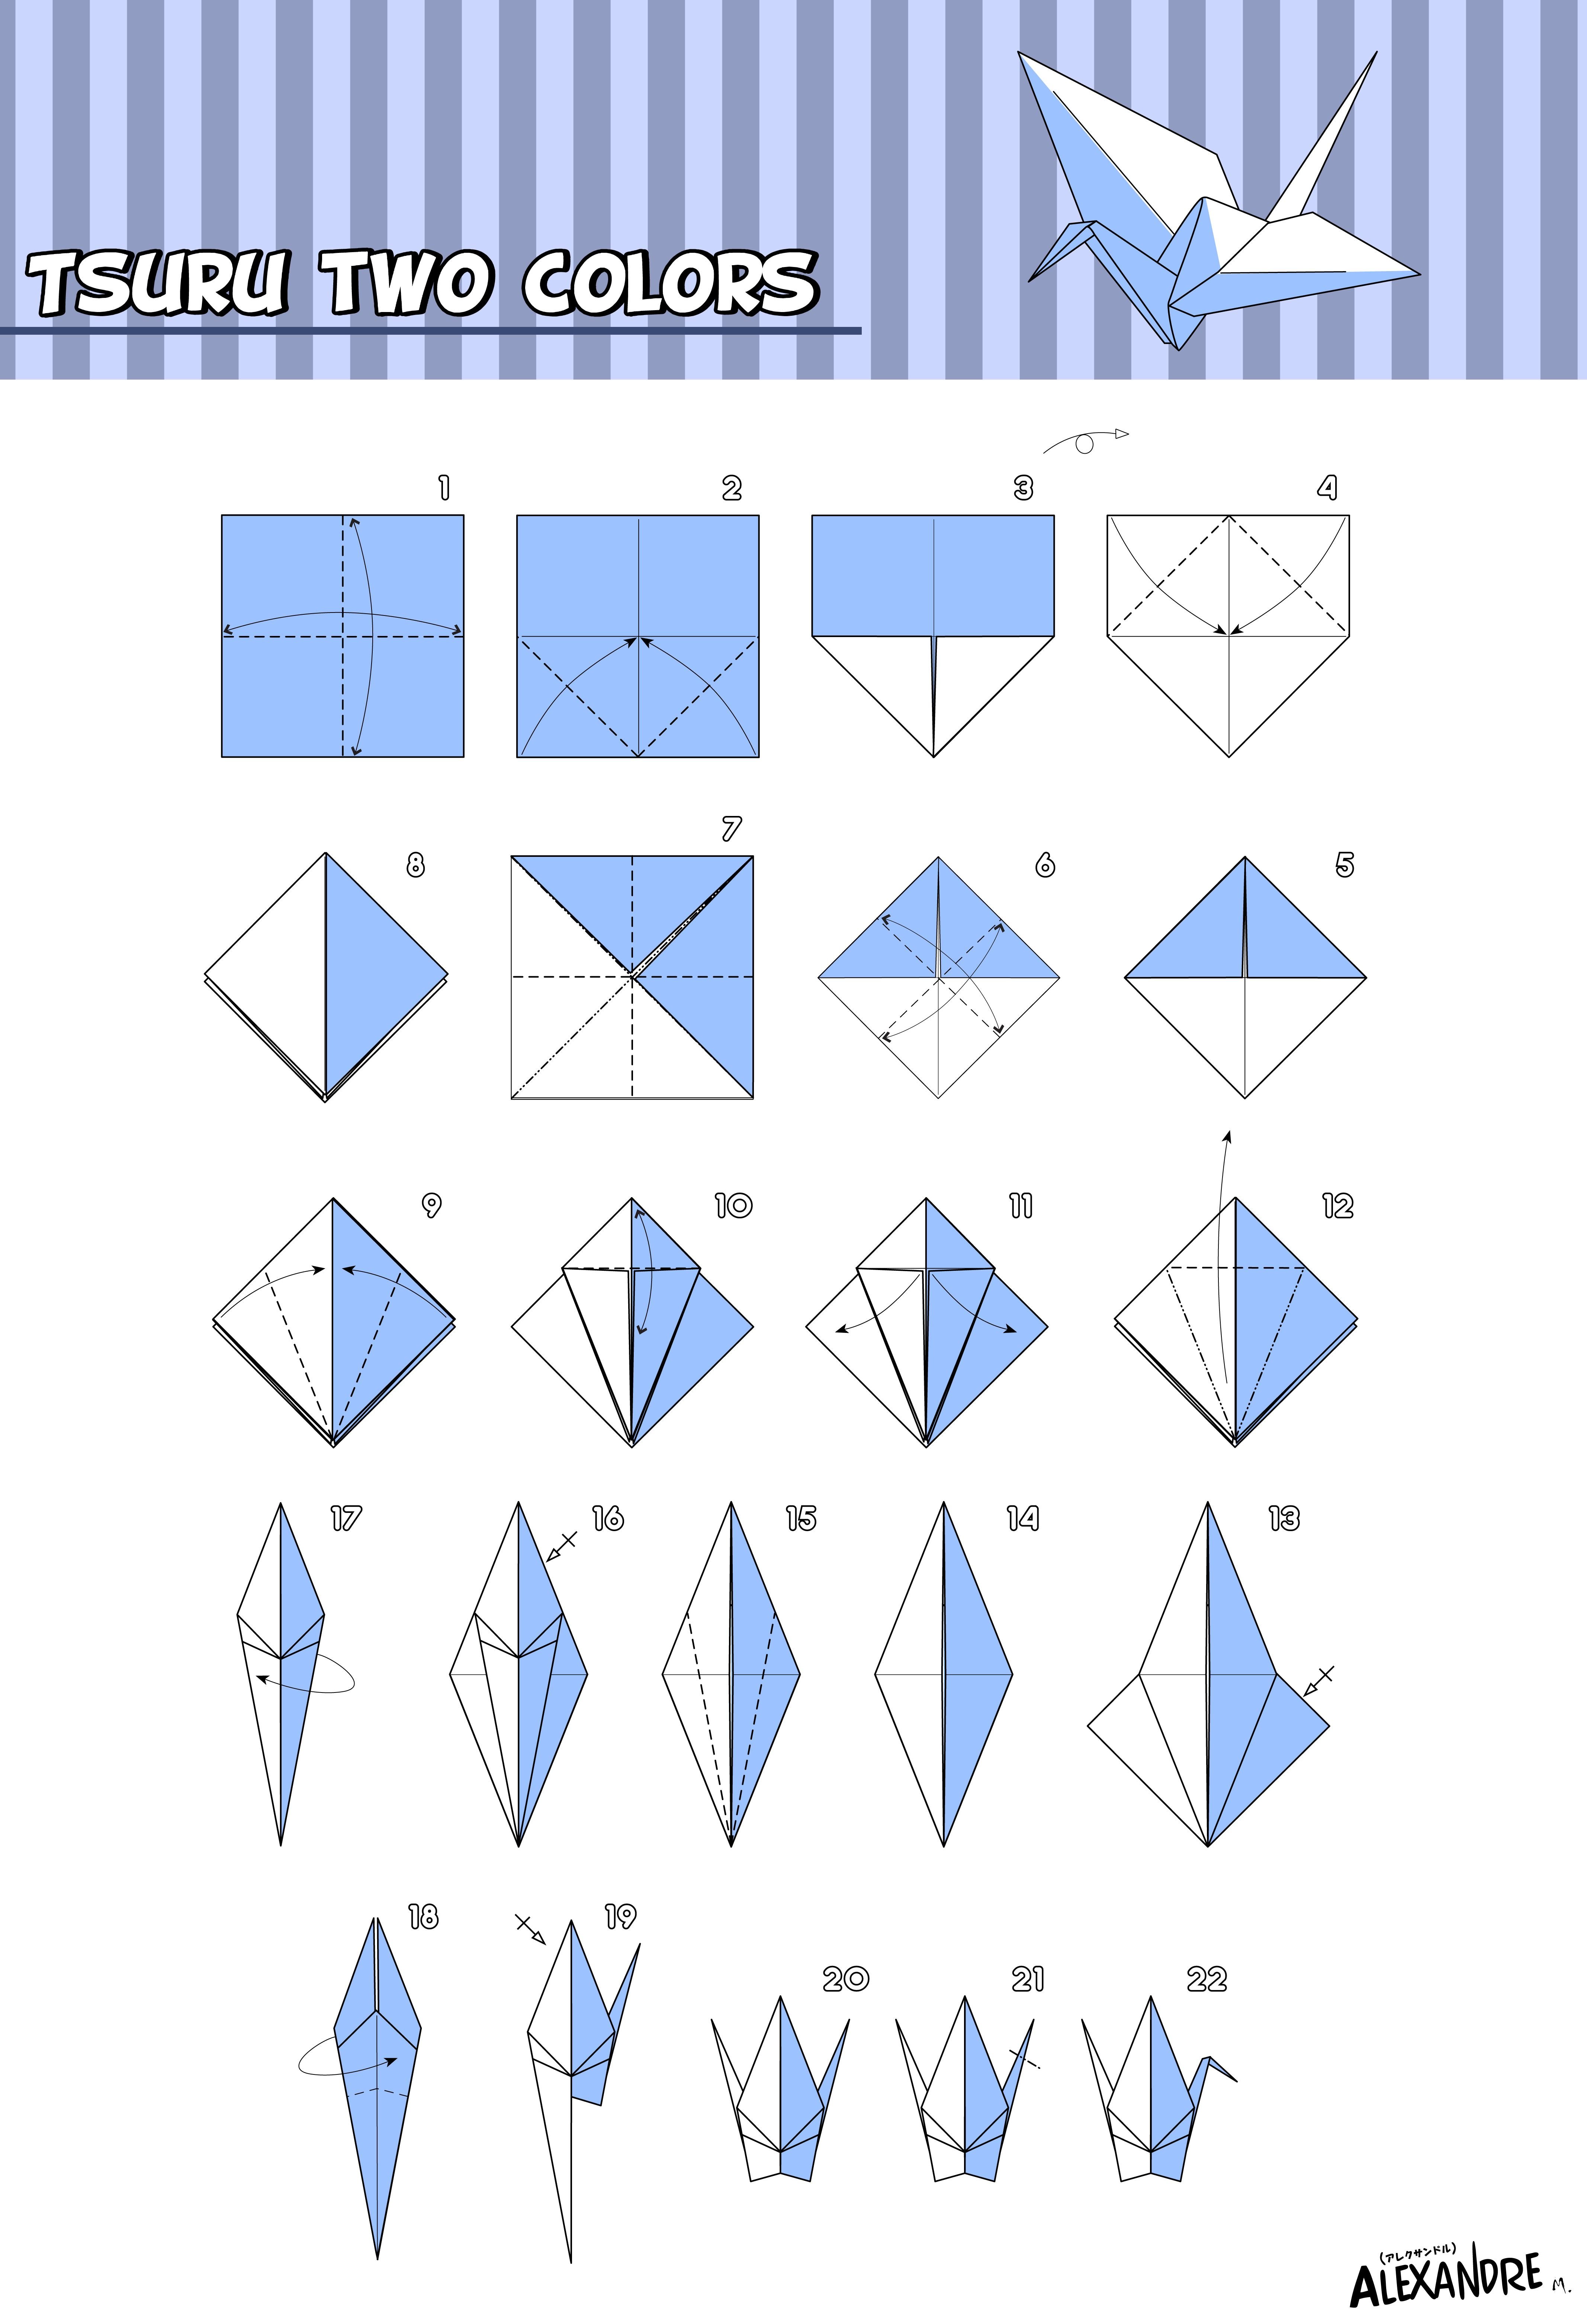 Сделать журавлика оригами пошаговая инструкция для начинающих. Как сложить журавля из бумаги пошагово. Оригами из бумаги для начинающих Журавлик. Схема как сложить журавлика из бумаги. Журавлик Цуру оригами схема.